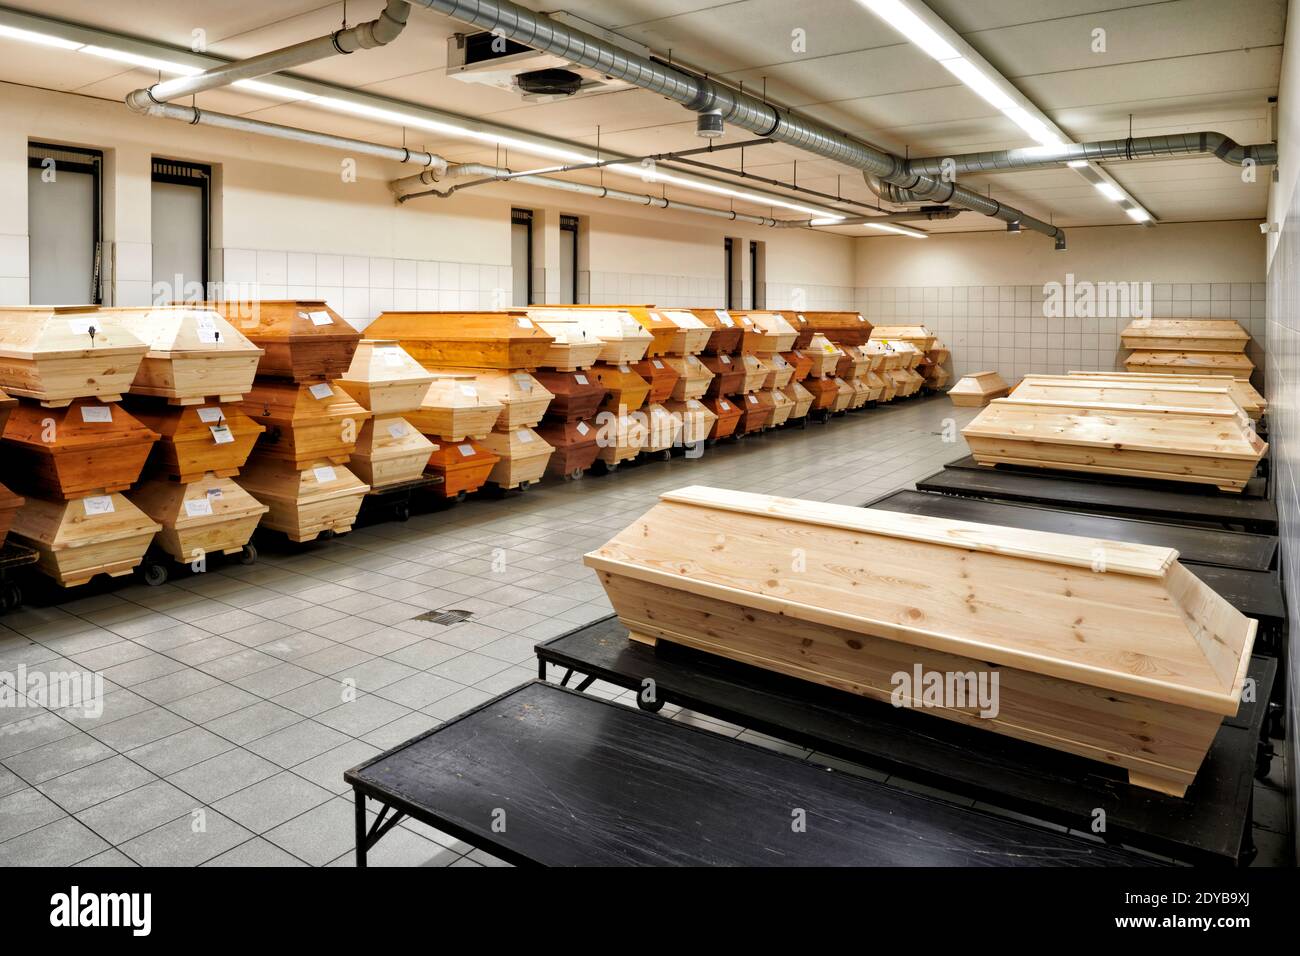 In einem kuehlen Raum eines Krematoriums stapeln sich Saerge mit Toten die noch eingeaeschert werden sollen. Die Sargreihen verlaufen an den Waenden e Stock Photo